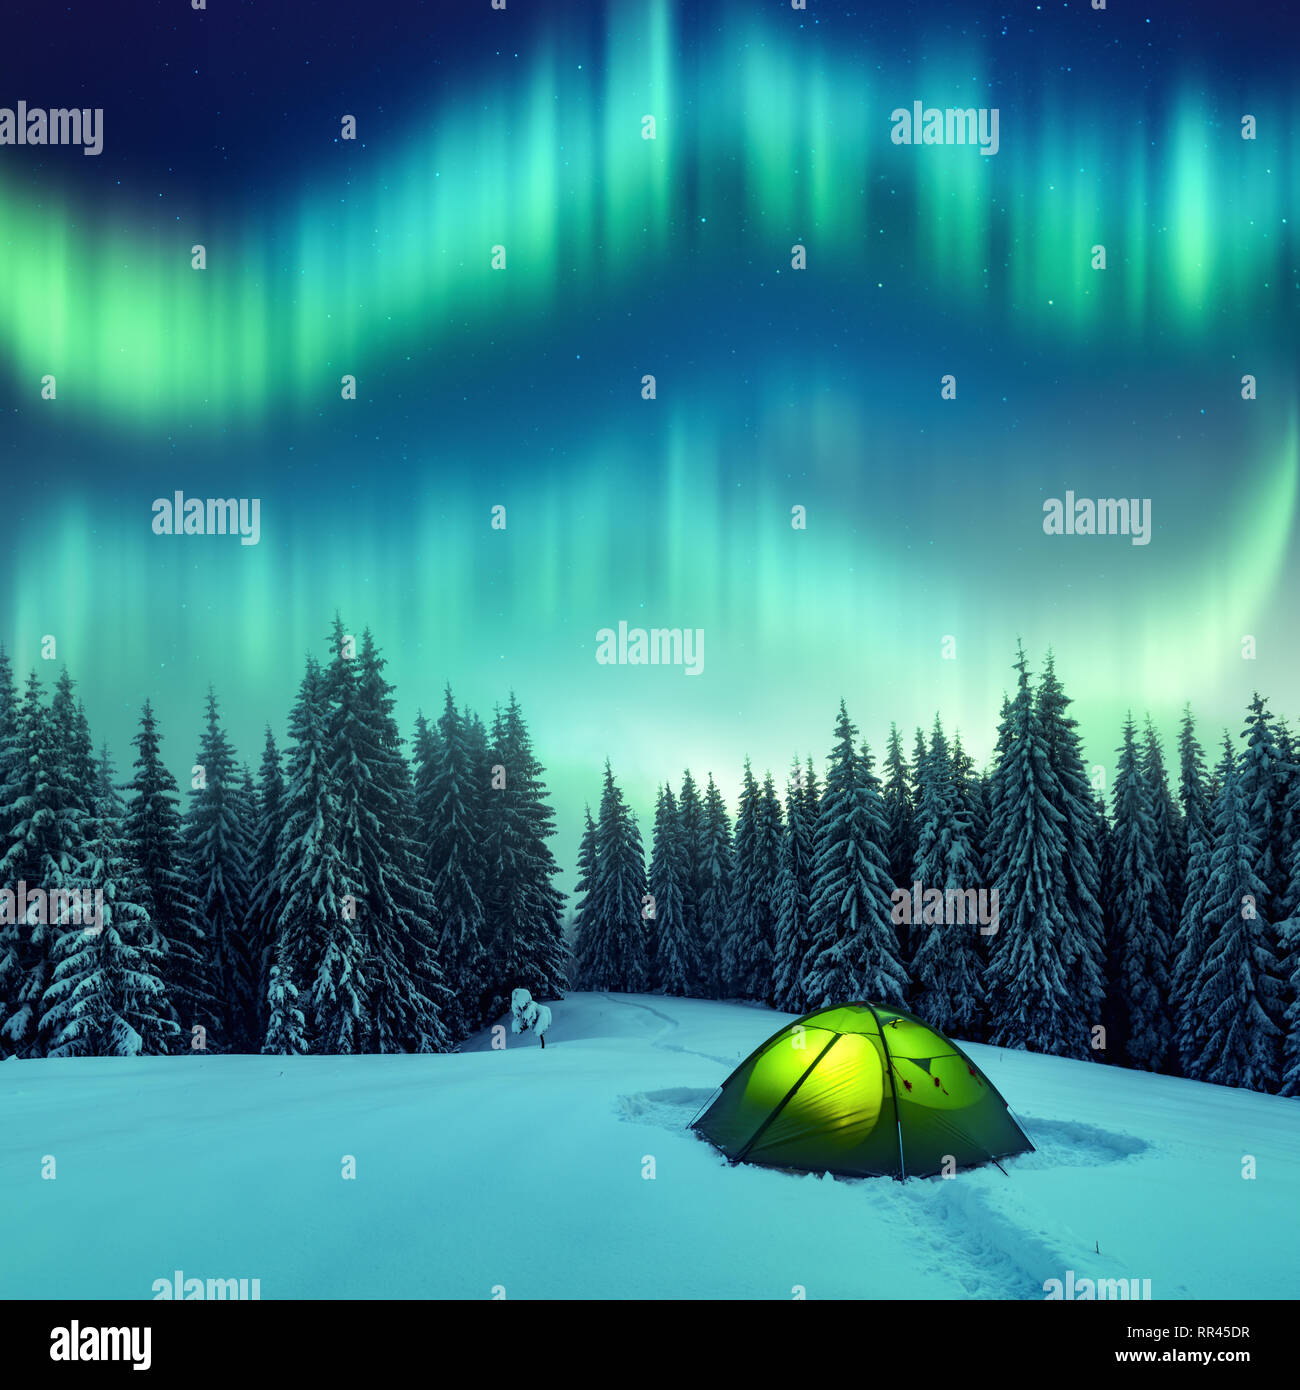 Aurora Borealis. Northern Lights en forêt d'hiver. Ciel avec lumières polaires et des étoiles. Nuit paysage d'hiver avec Aurora, tente verte et de pinède. Concept de voyage Banque D'Images